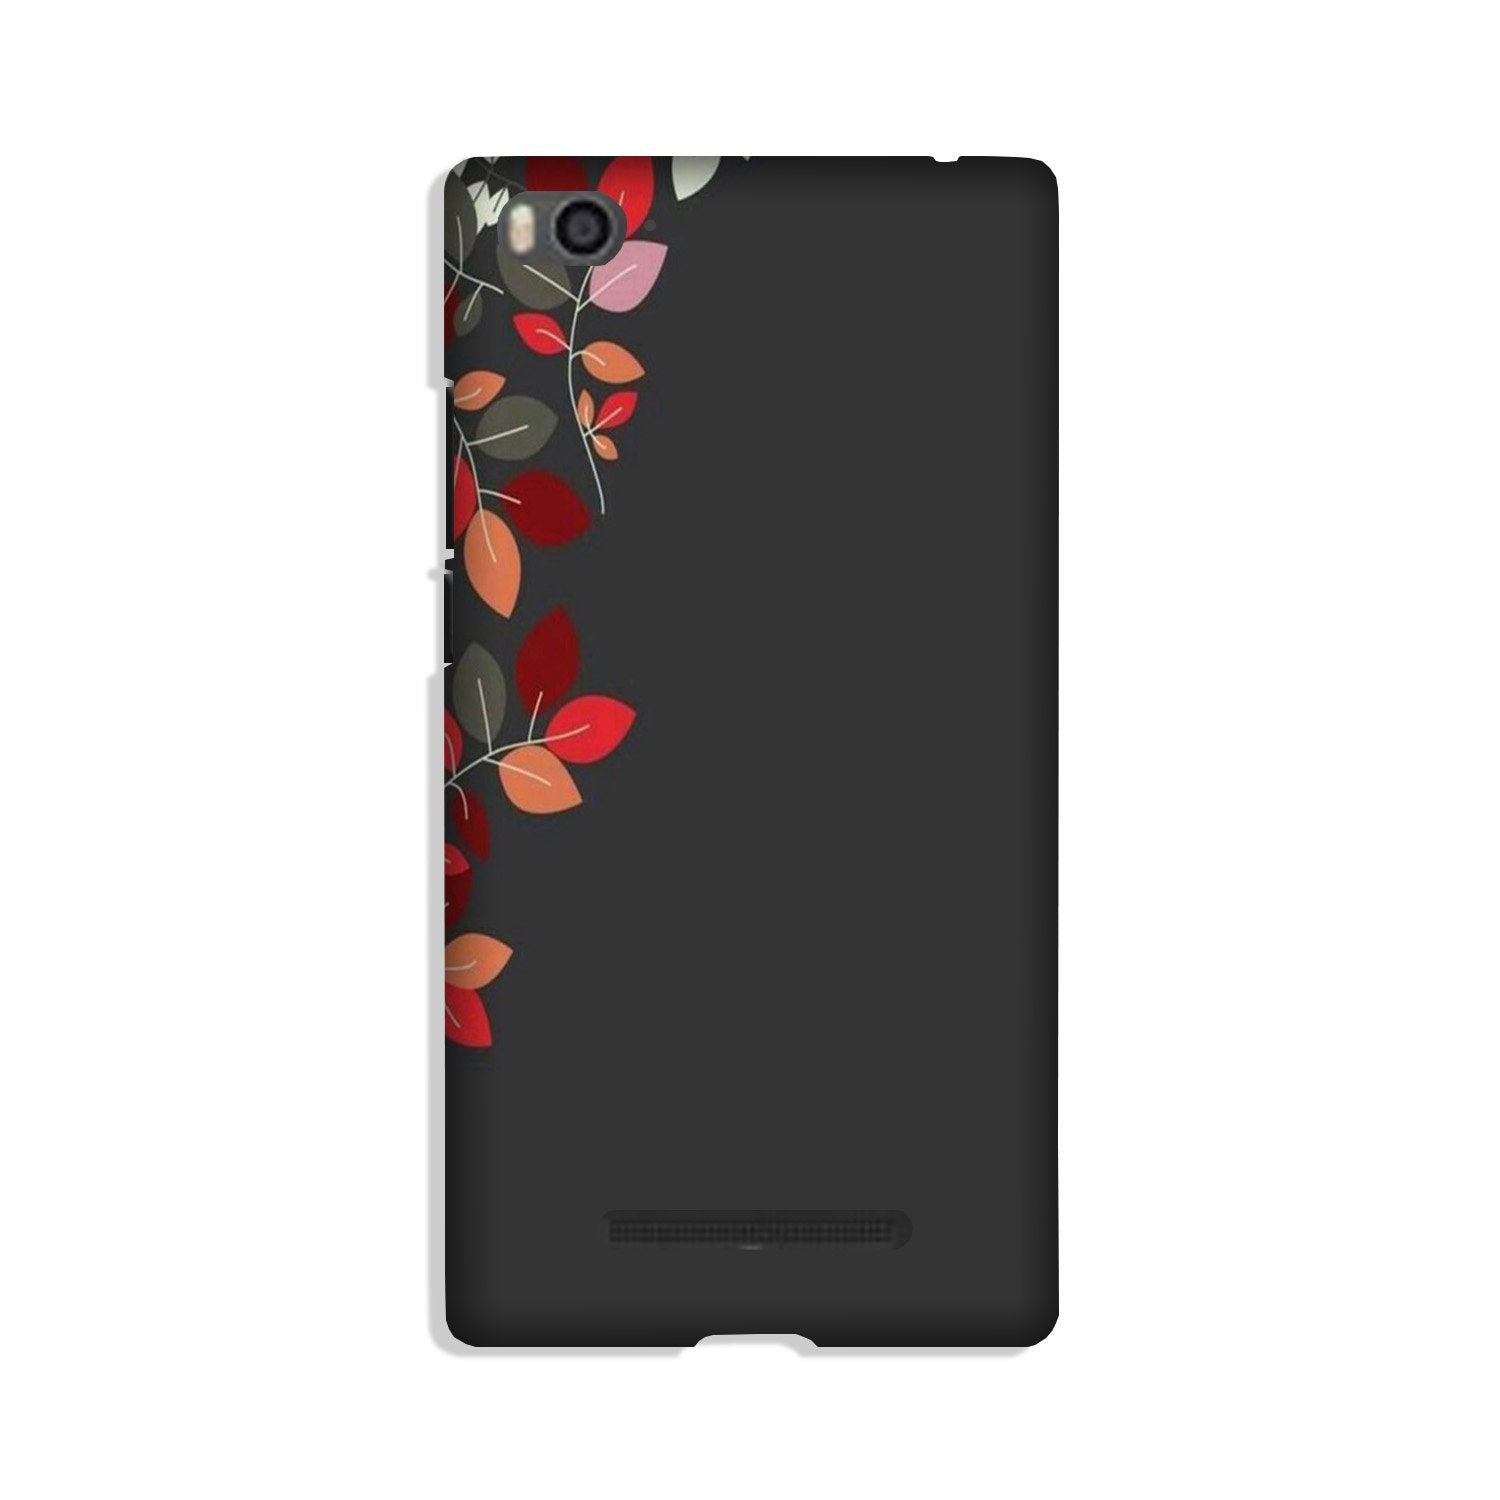 Grey Background Case for Xiaomi Mi 4i